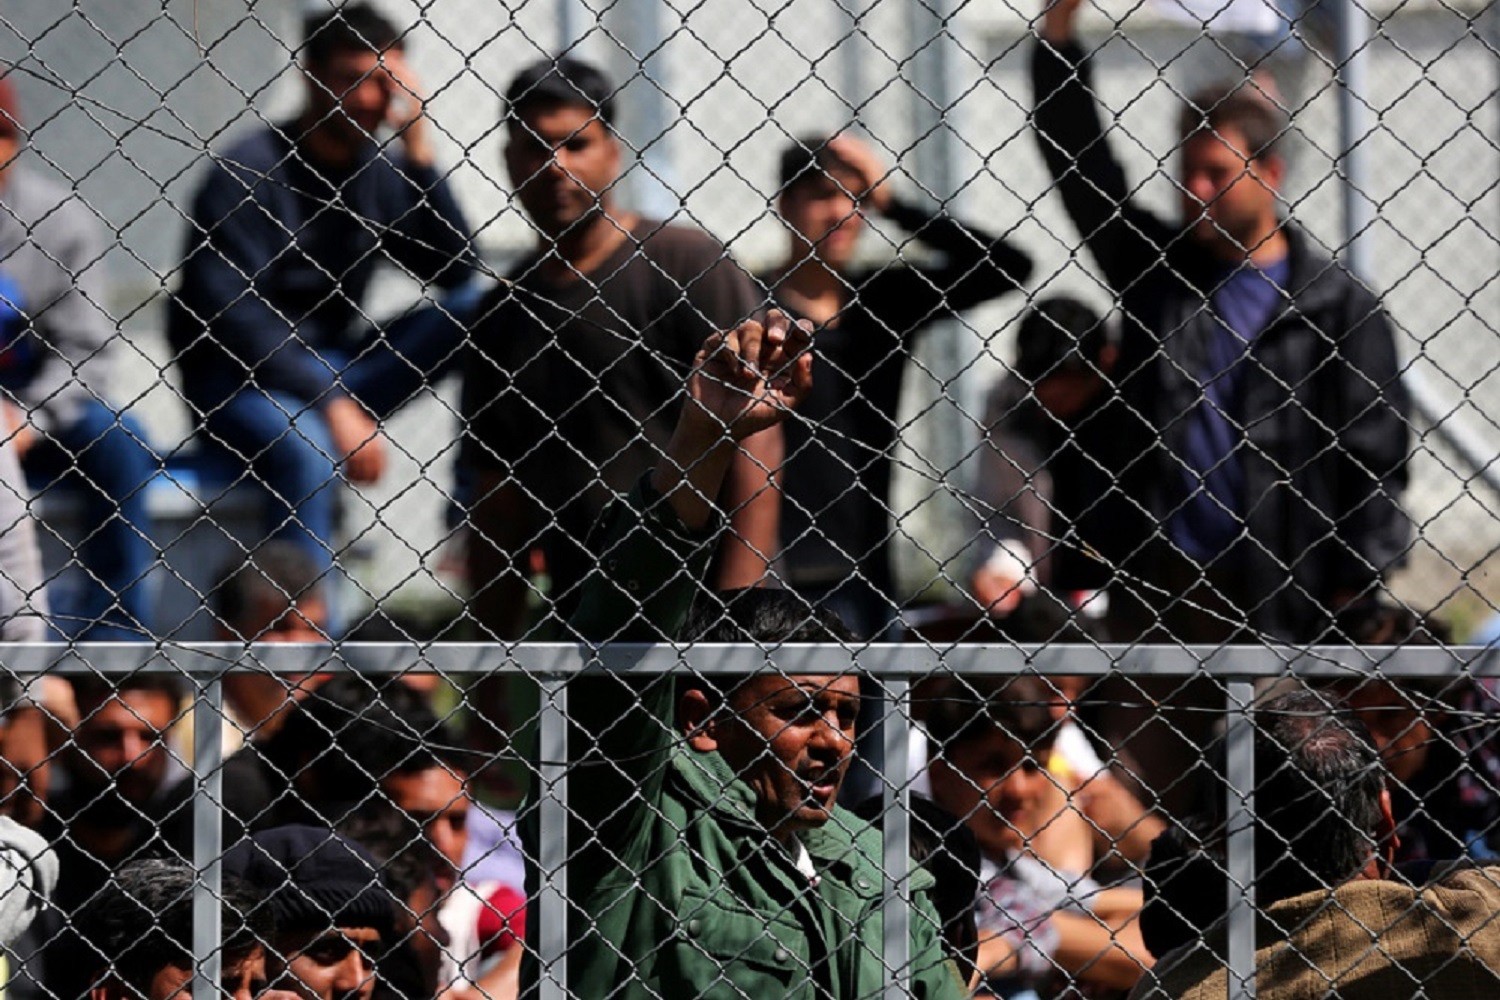 Υπηρεσία φροντίδας αλλοδαπών οι ΕΔ: Σχεδόν 28.000 παράνομοι μετανάστες σιτίζονται και περιθάλπονται από τον Στρατό